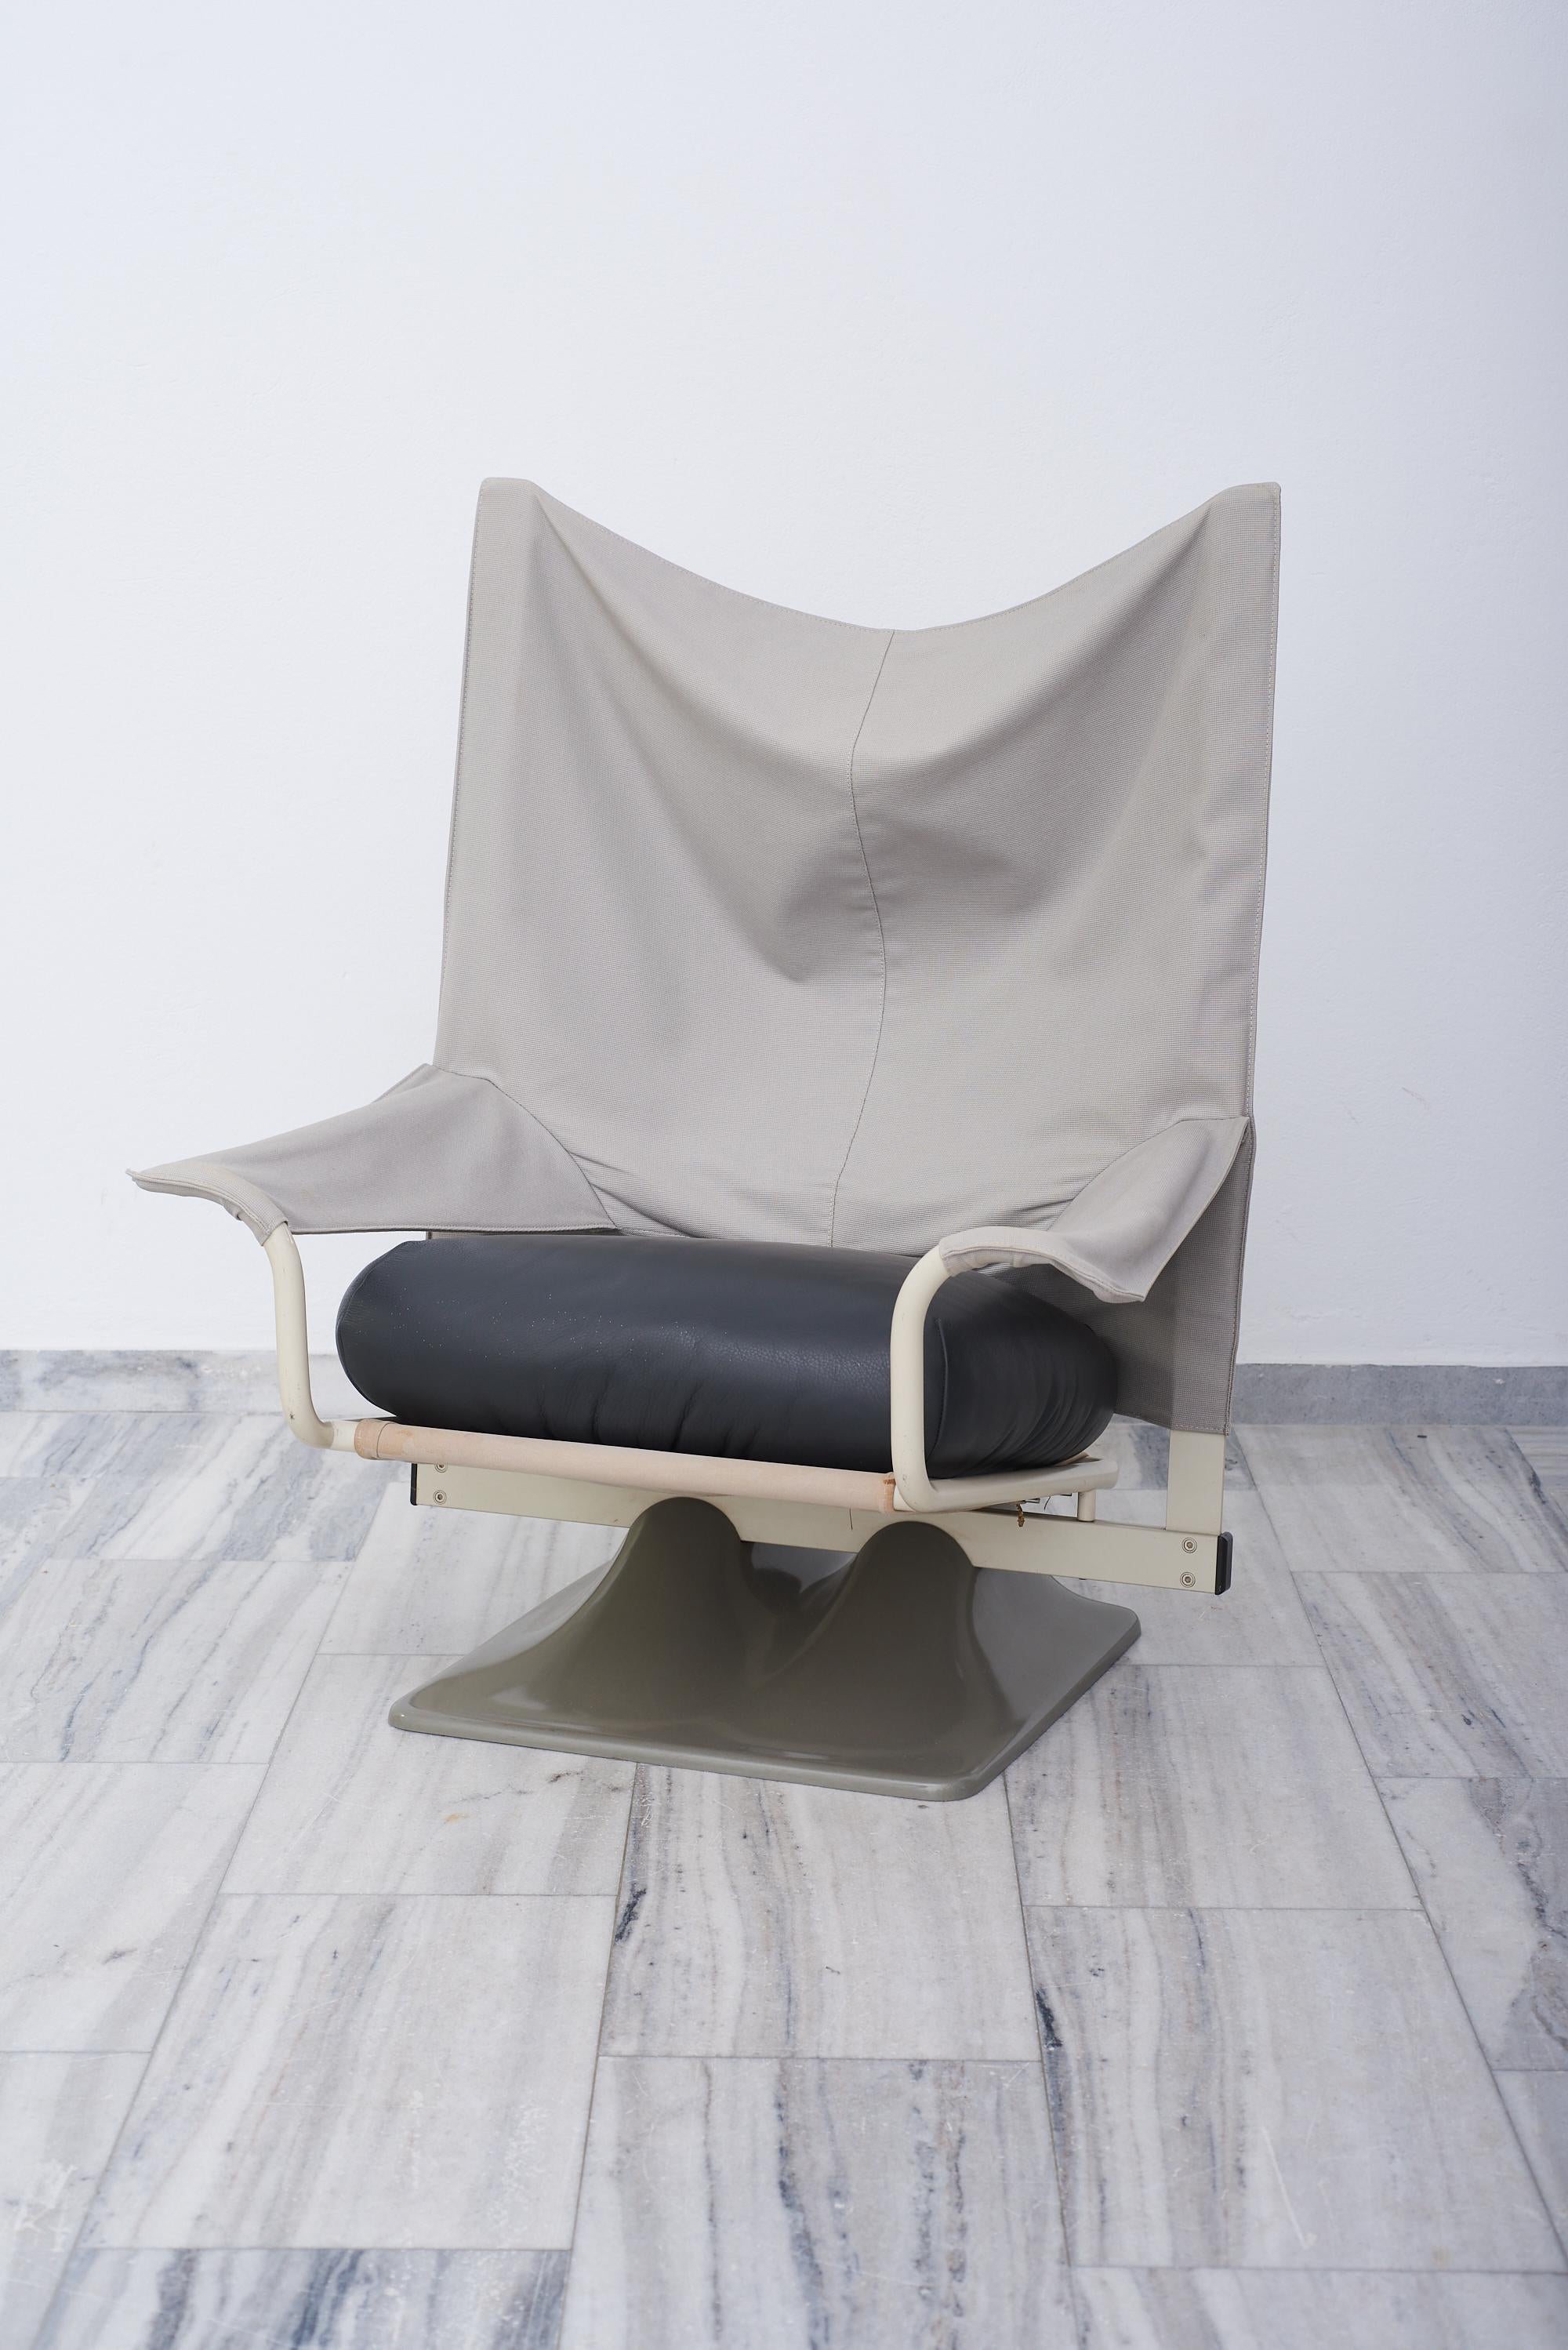 La chaise AEO, dernier produit du groupe Archizoom, a été conçue par Paolo Deganello en 1973 comme une interprétation non conventionnelle d'une chaise de design contemporain. L'audace de ses formes trouve un écho dans l'utilisation expérimentale des